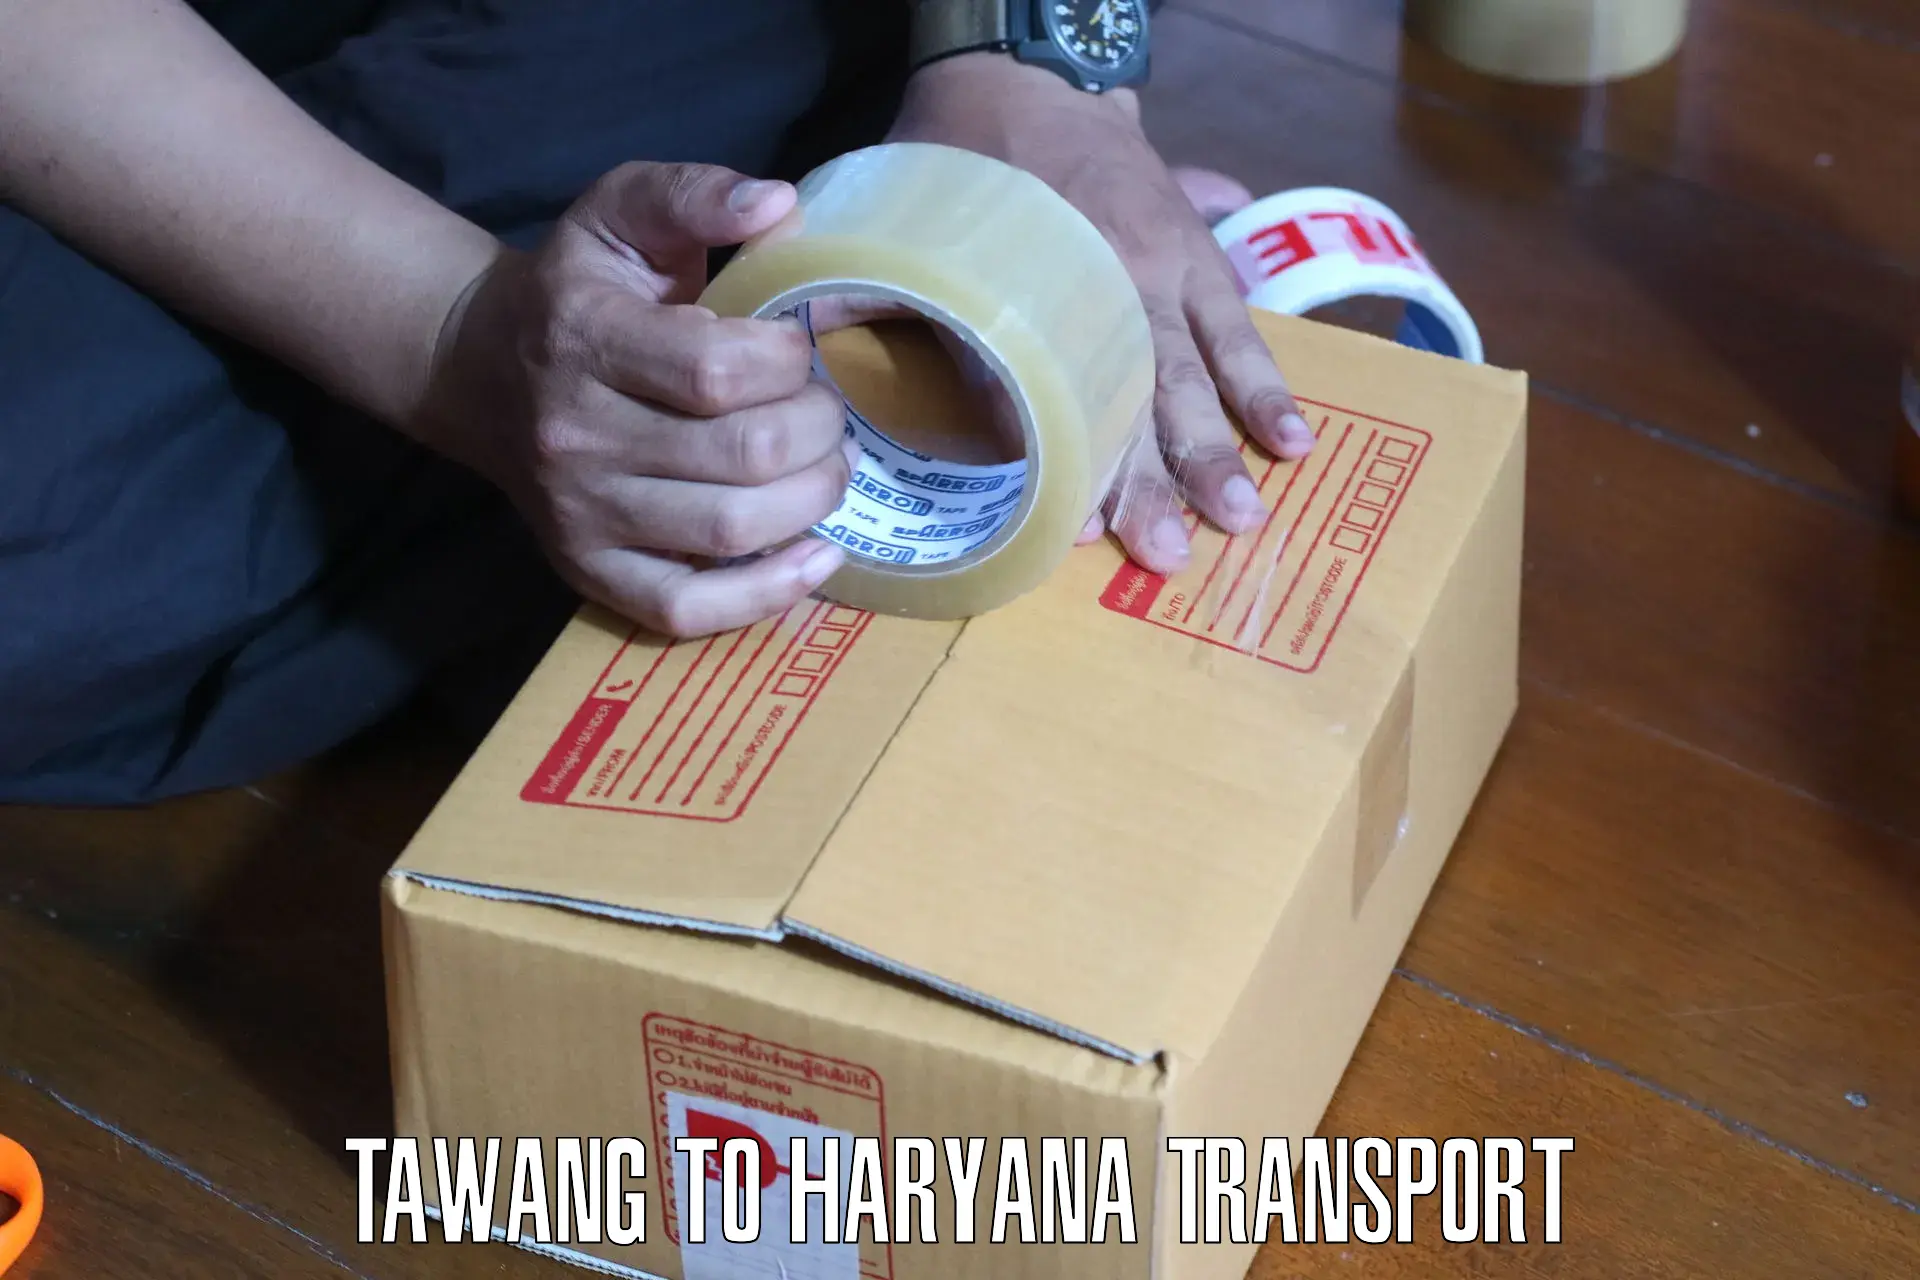 Online transport service Tawang to Barwala